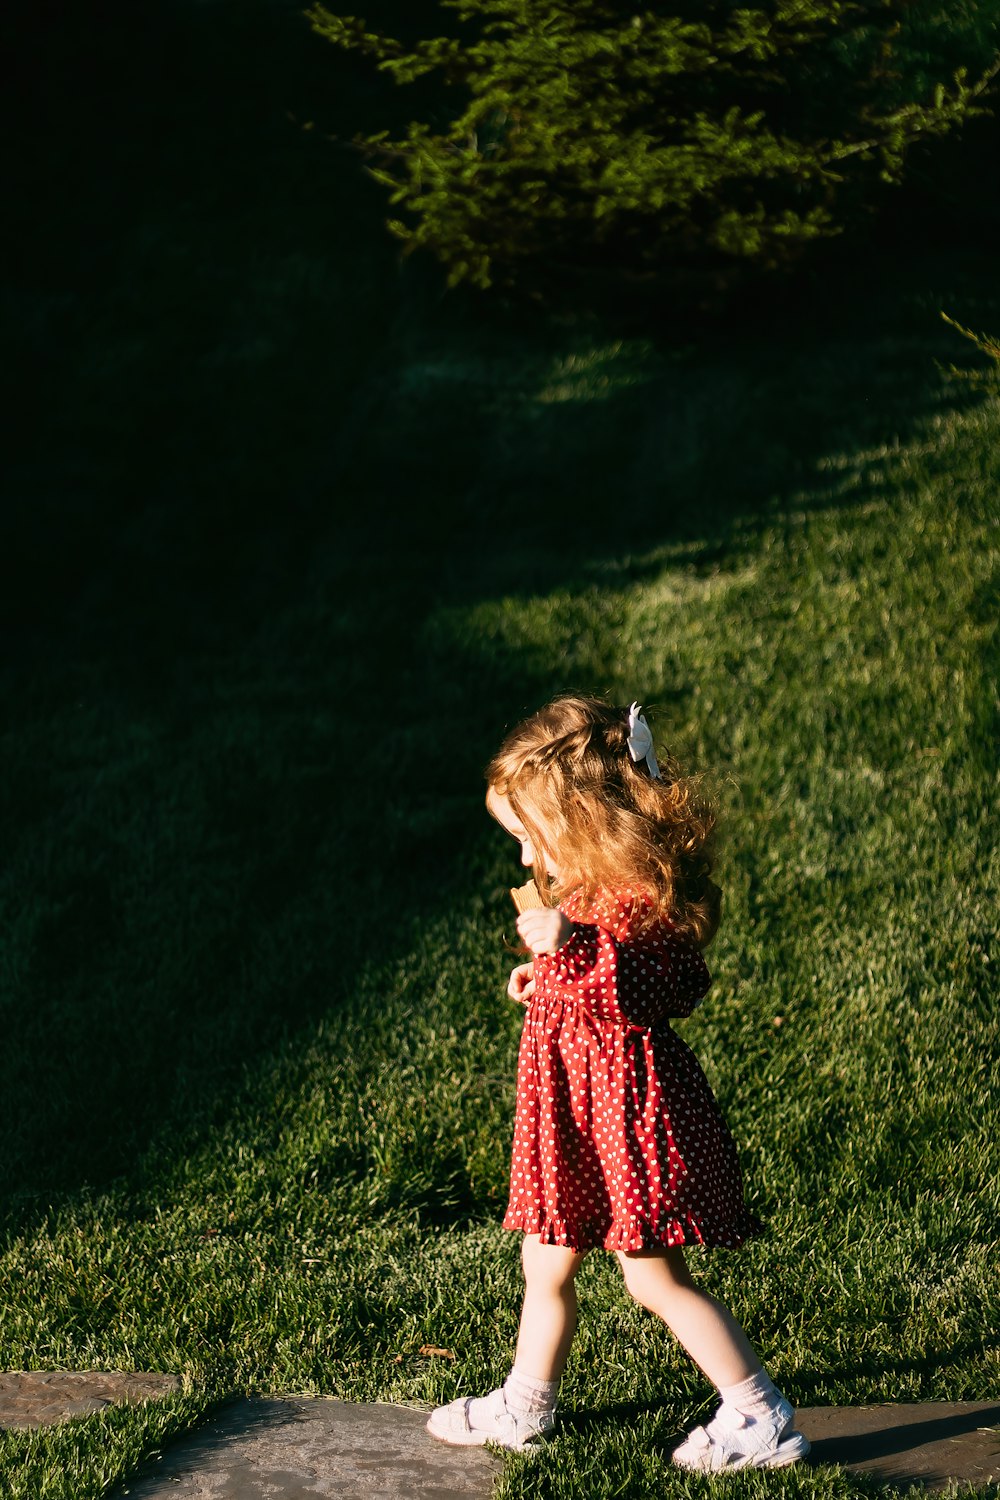 낮 동안 푸른 잔디밭에 서 있는 빨간색과 검은색 드레스를 입은 소녀